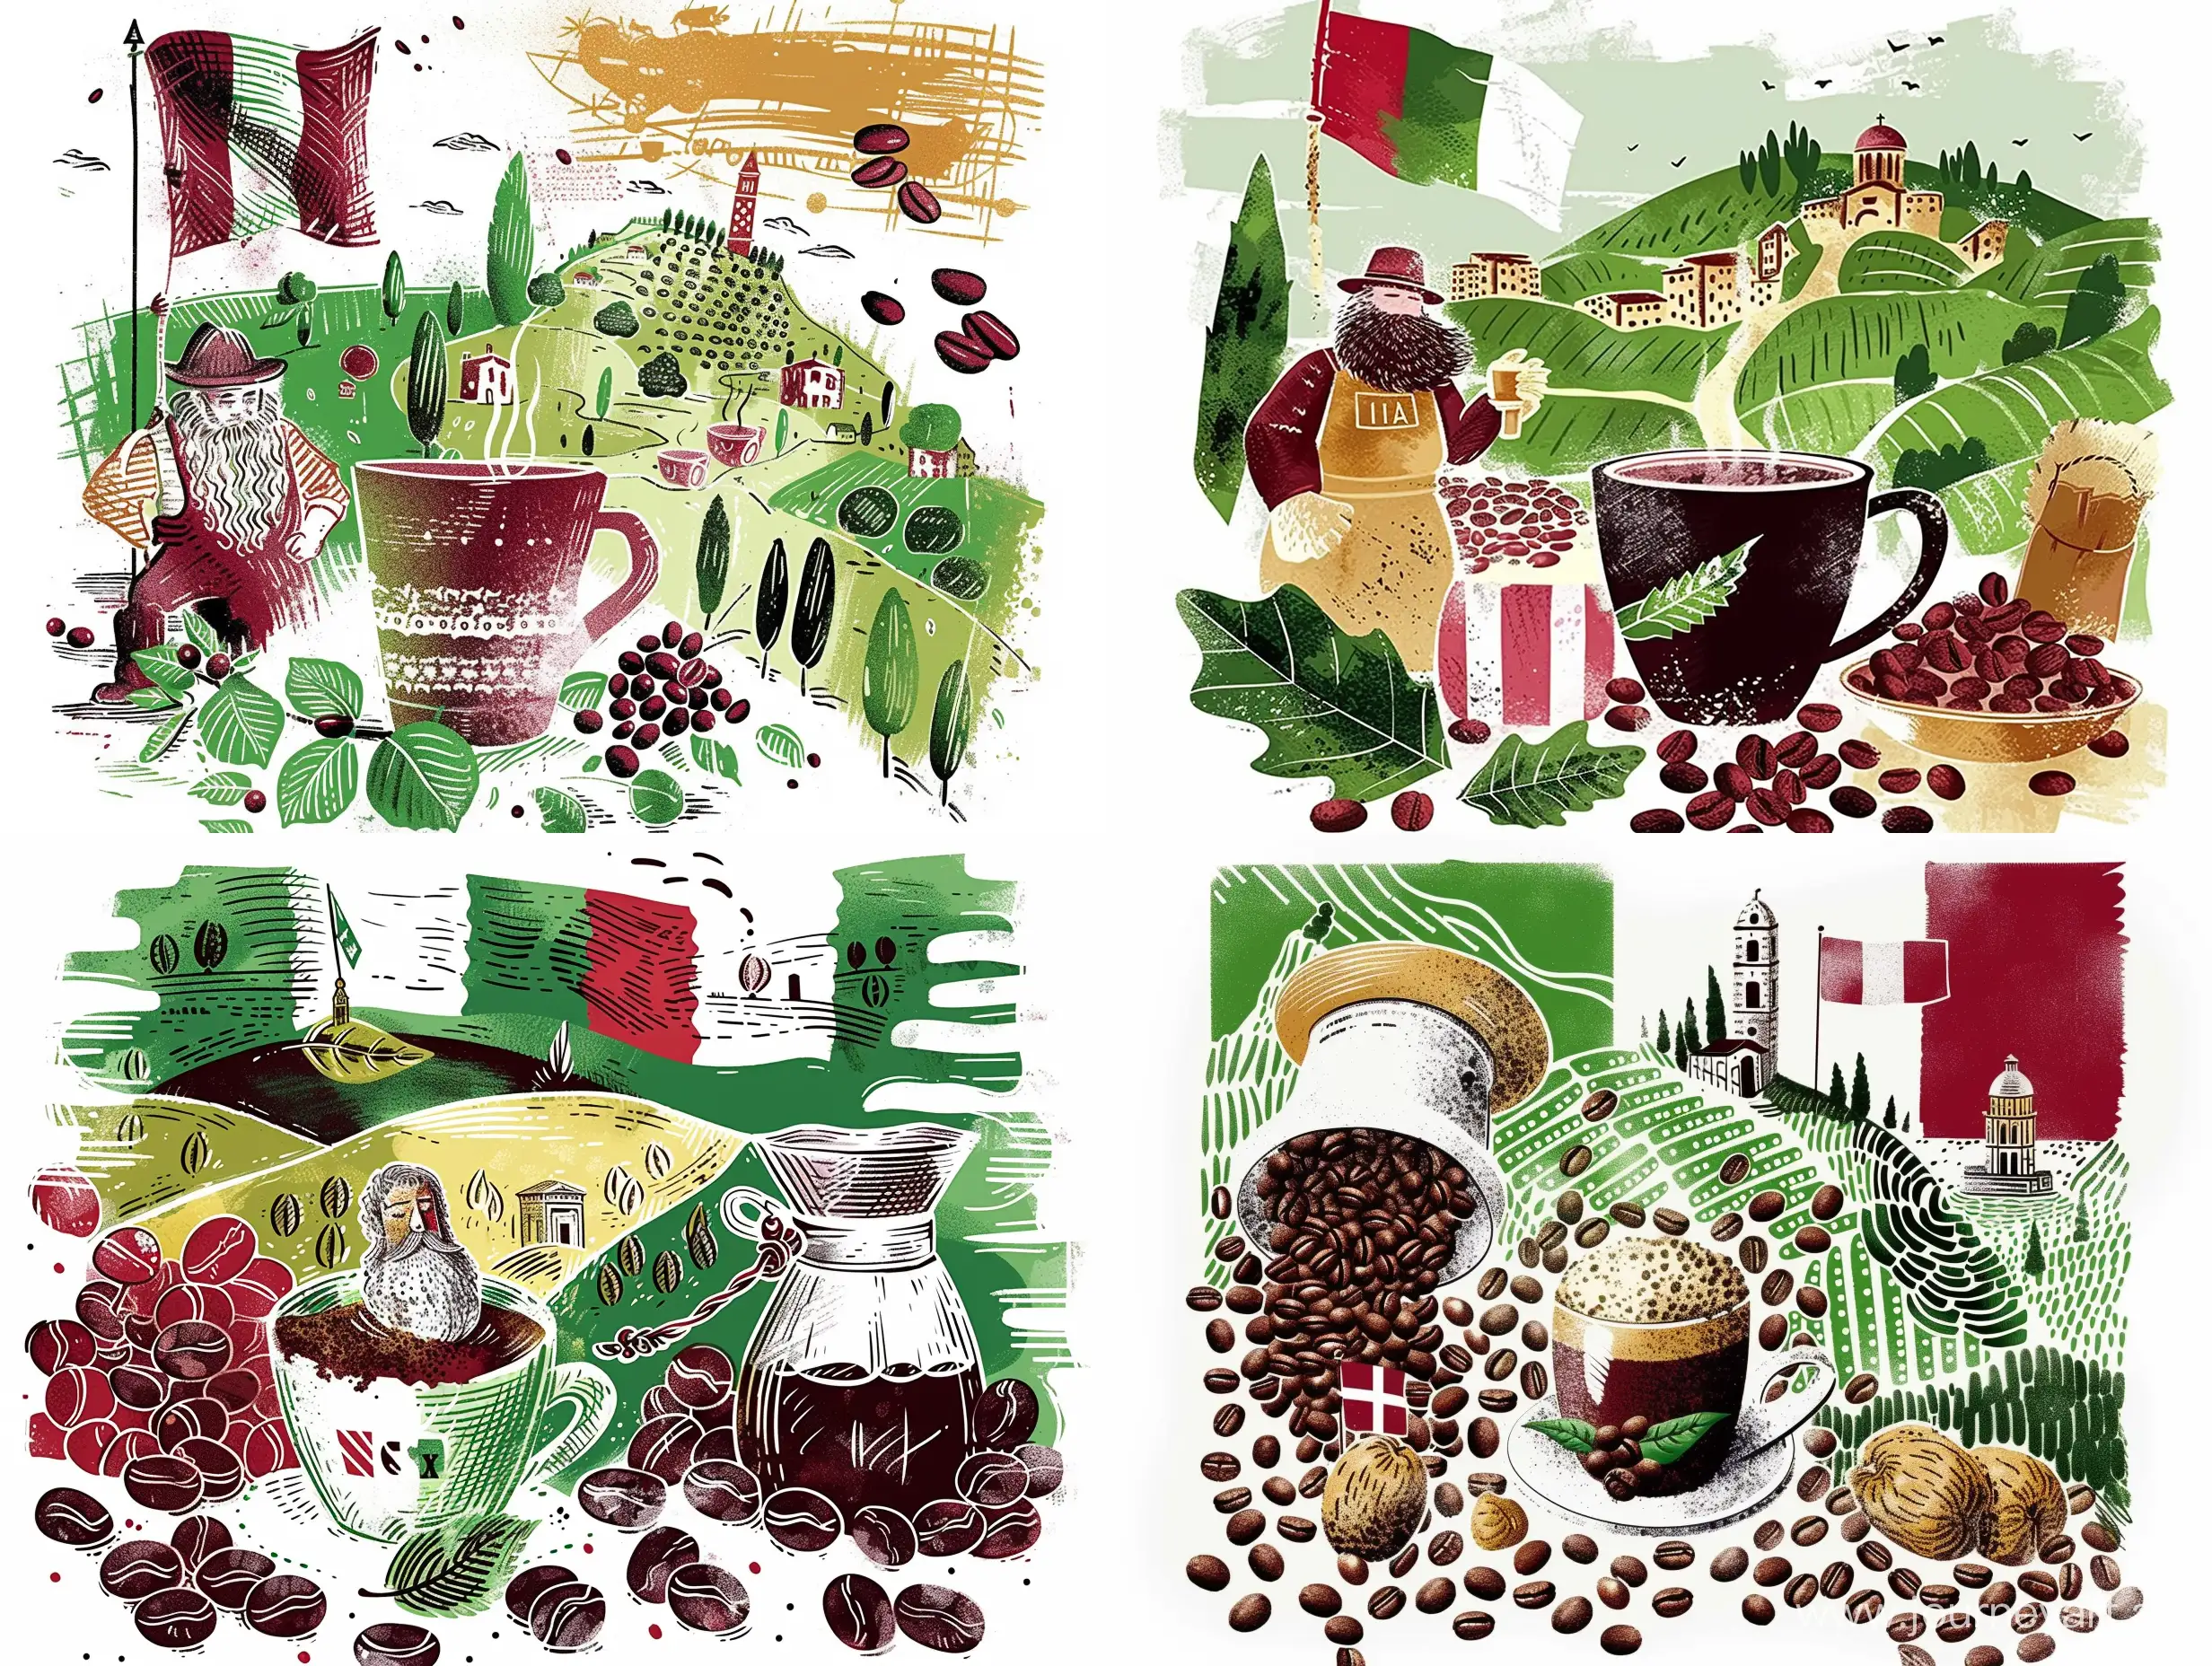 Иллюстрация в стиле авангард кофе, зерна кофе, Итальянский флаг, природа Италии в красном, зеленом и белом цветах, на белом фоне - sref https://i.pinimg.com/564x/6b/94/d1/6b94d172e0e340504c4207171d194e1f.jpg